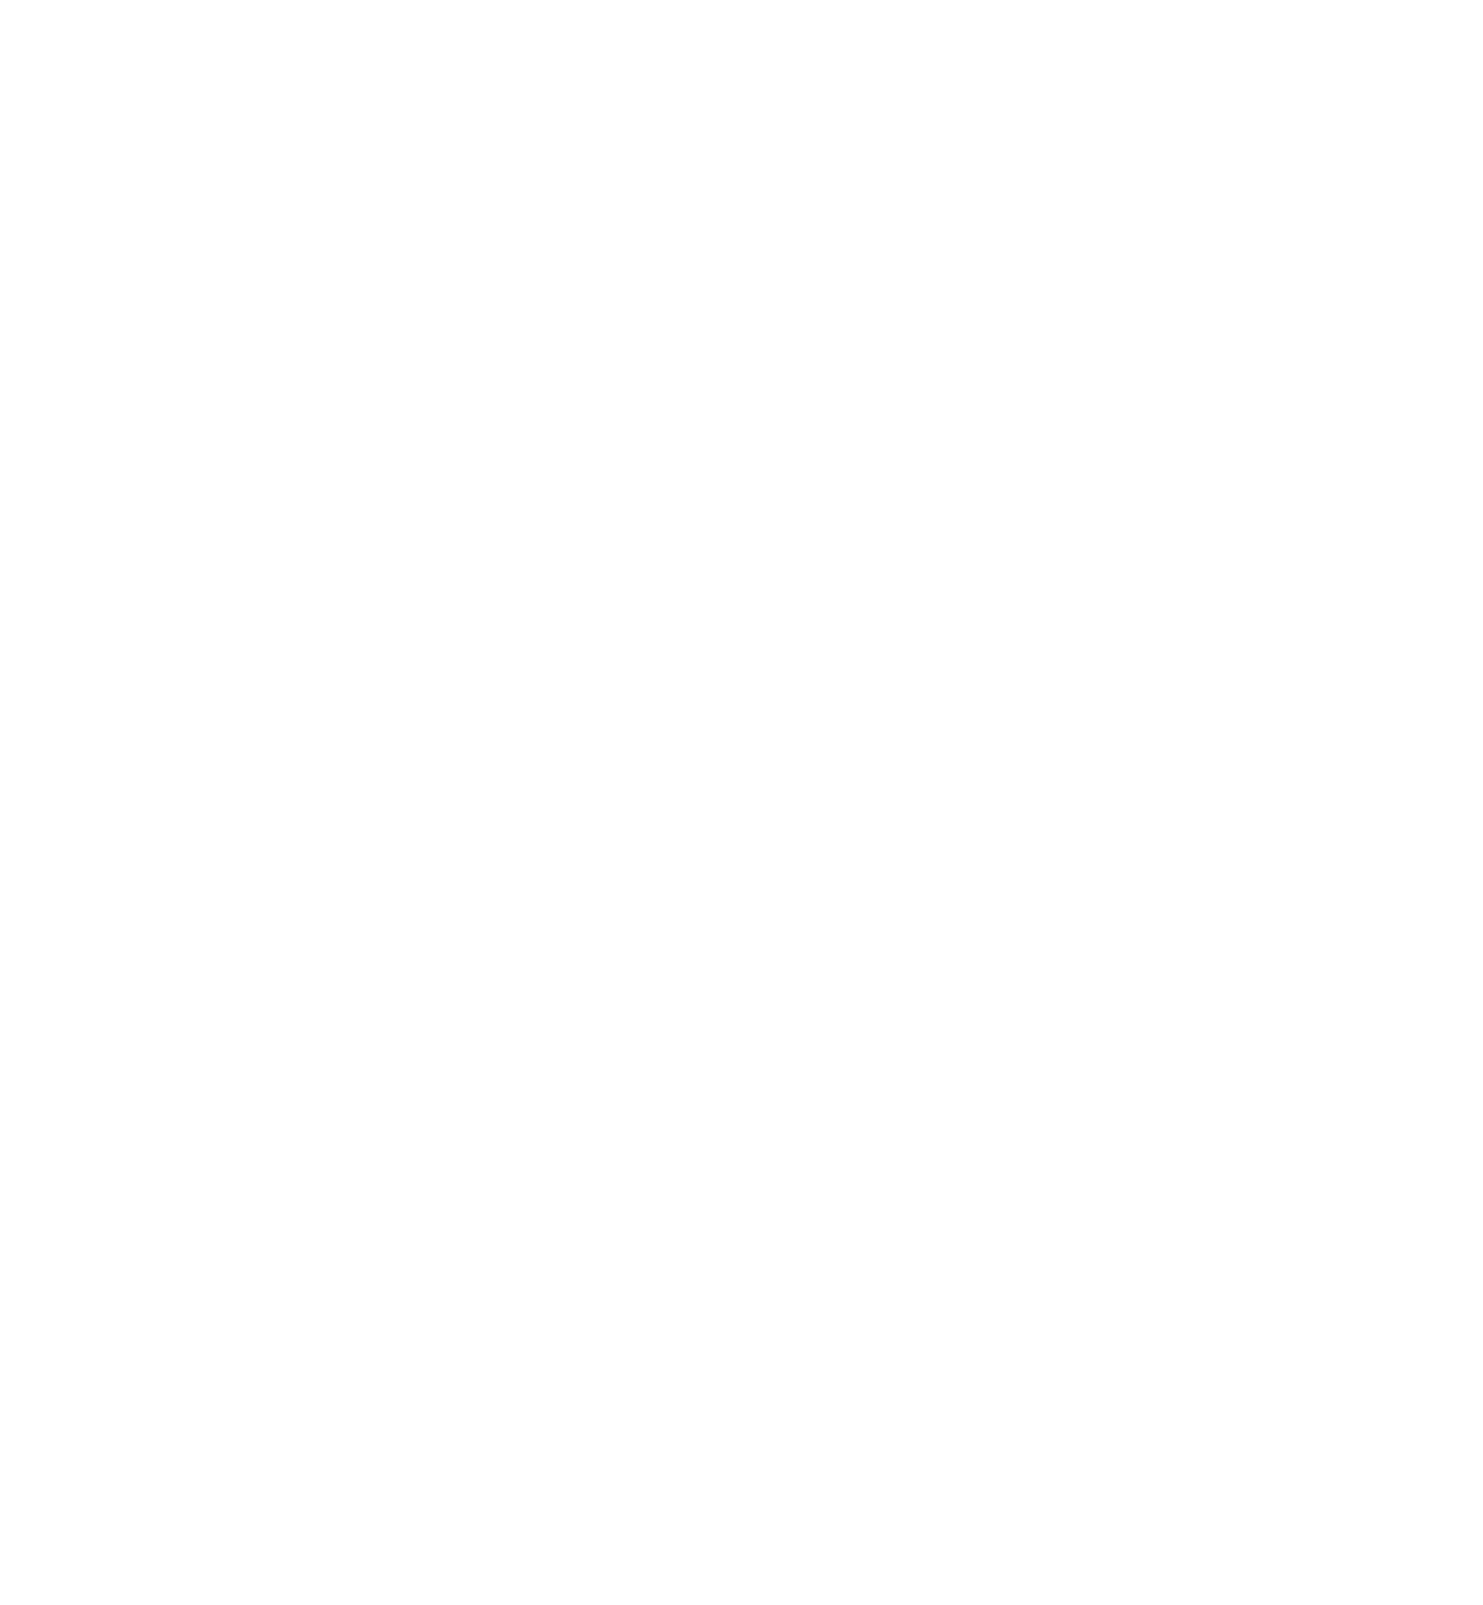 Town of Hartsville